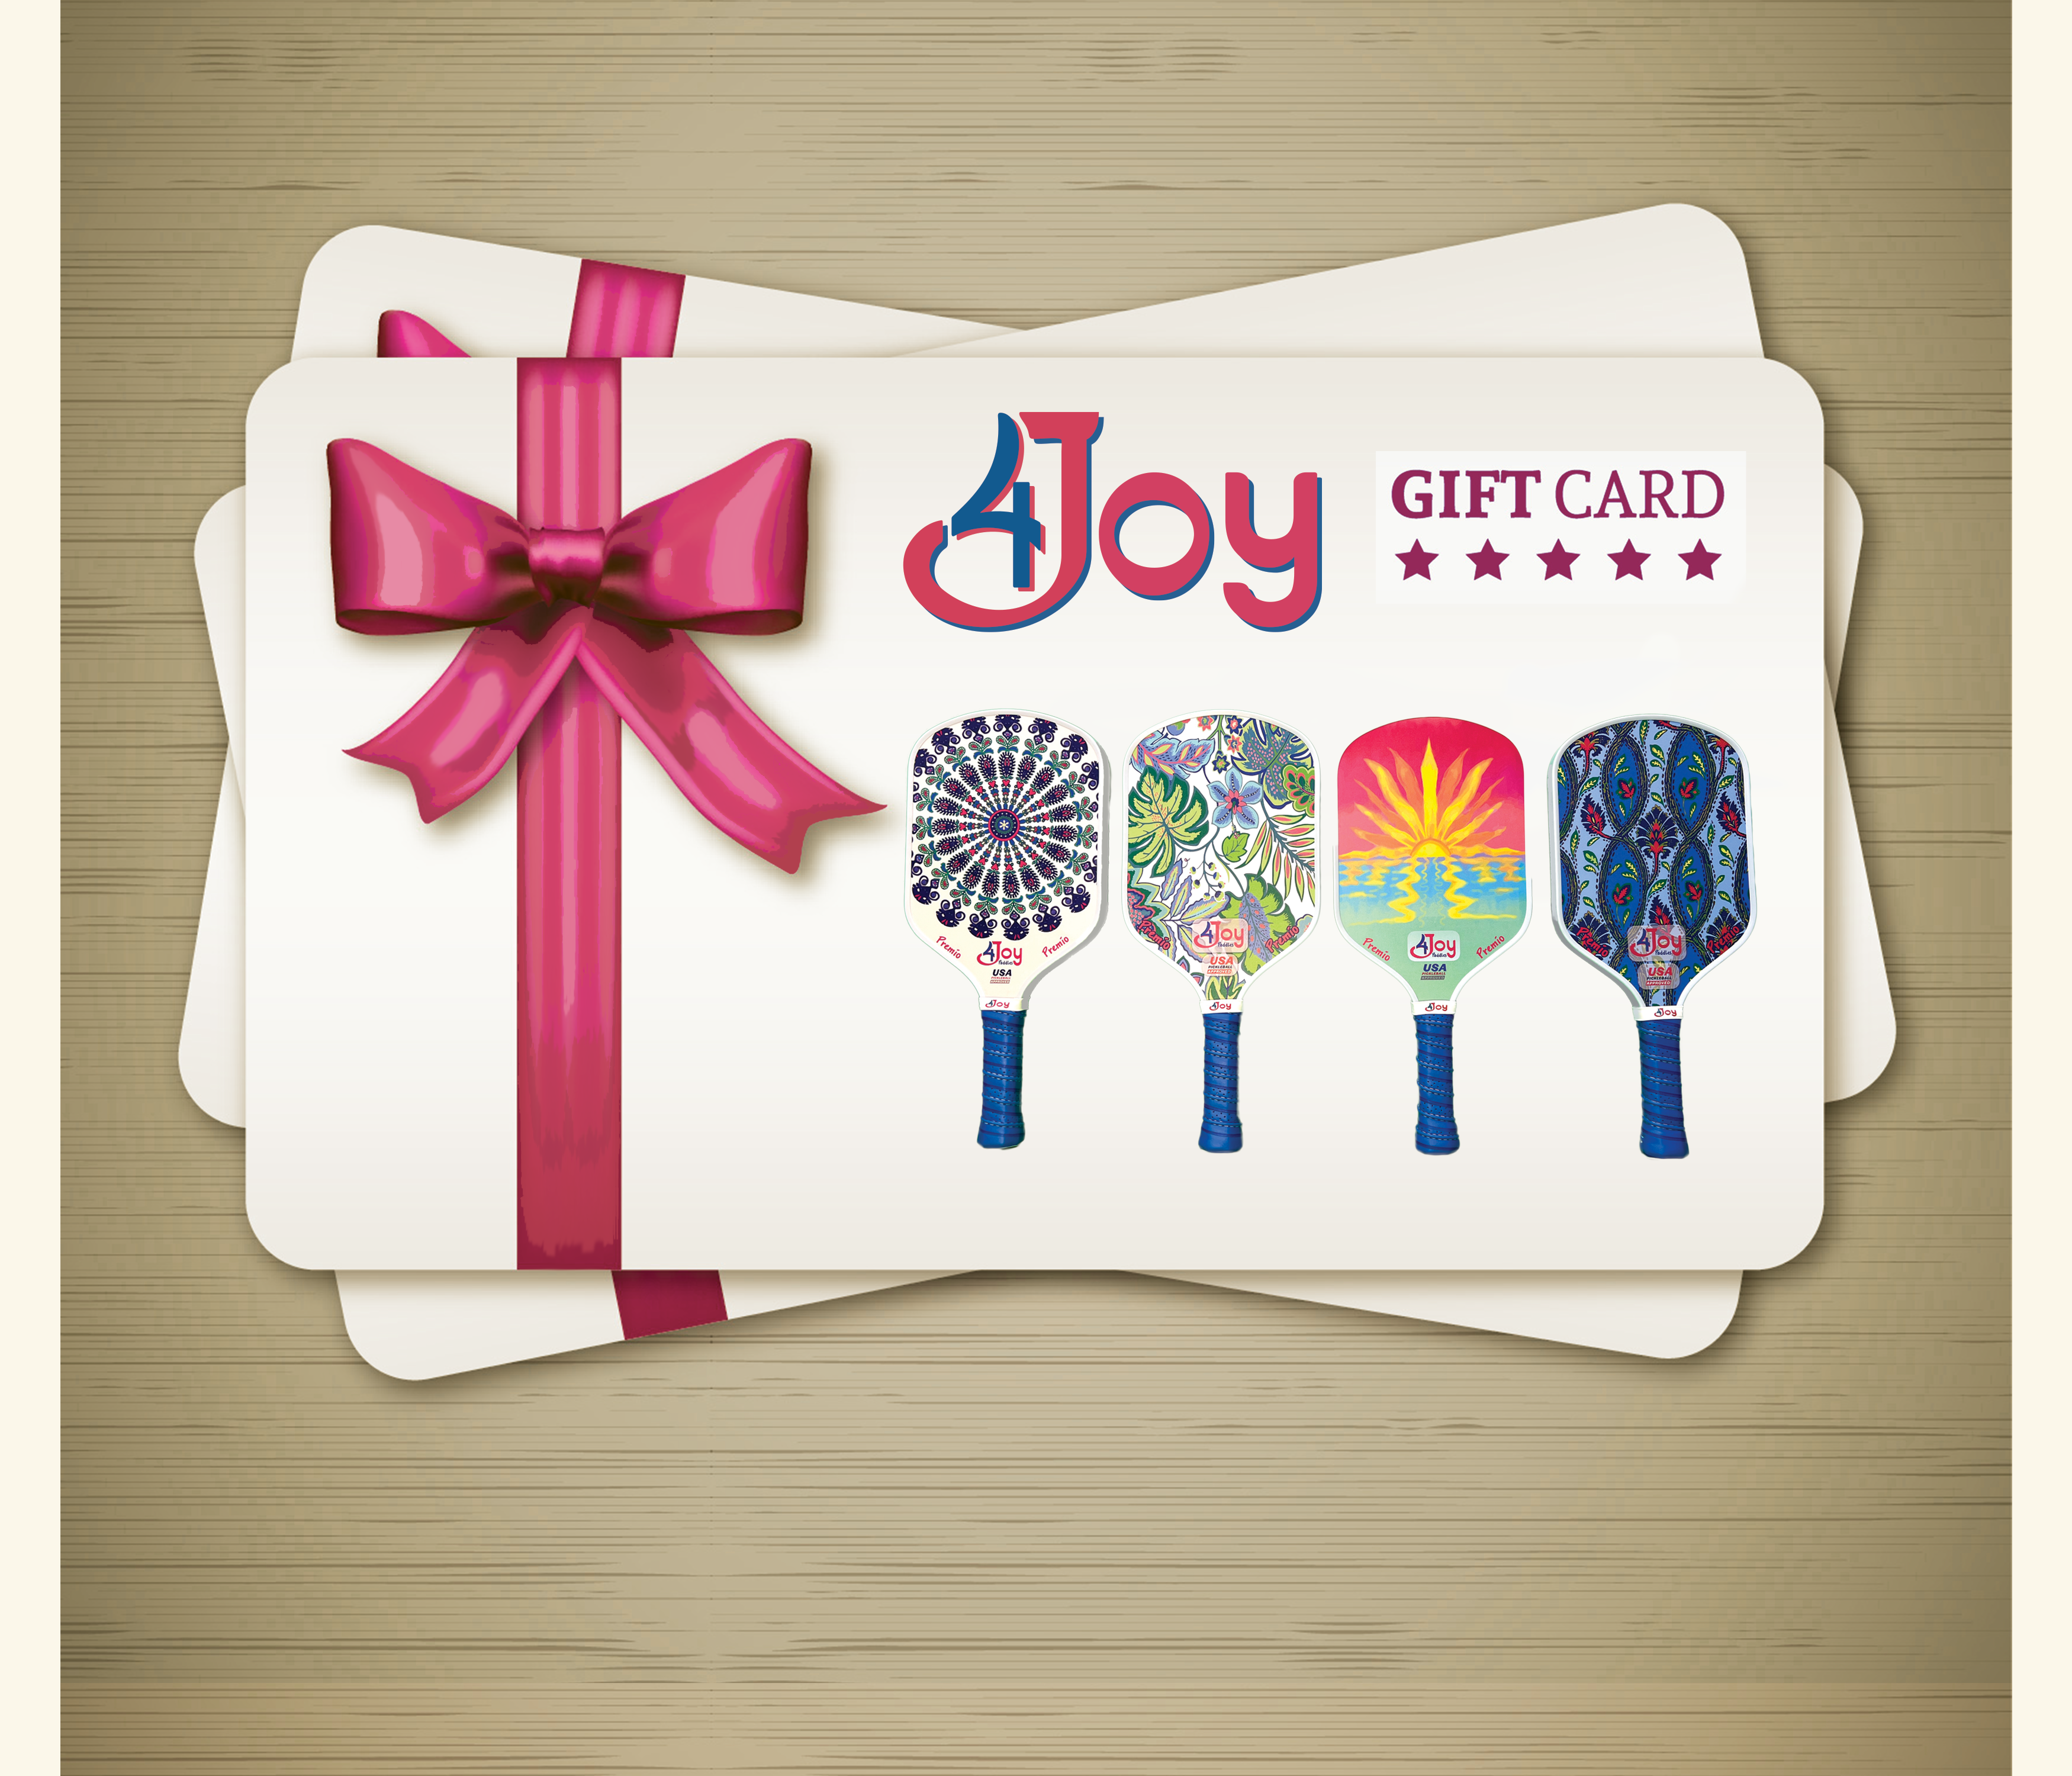 J.O.Y. Gift Card